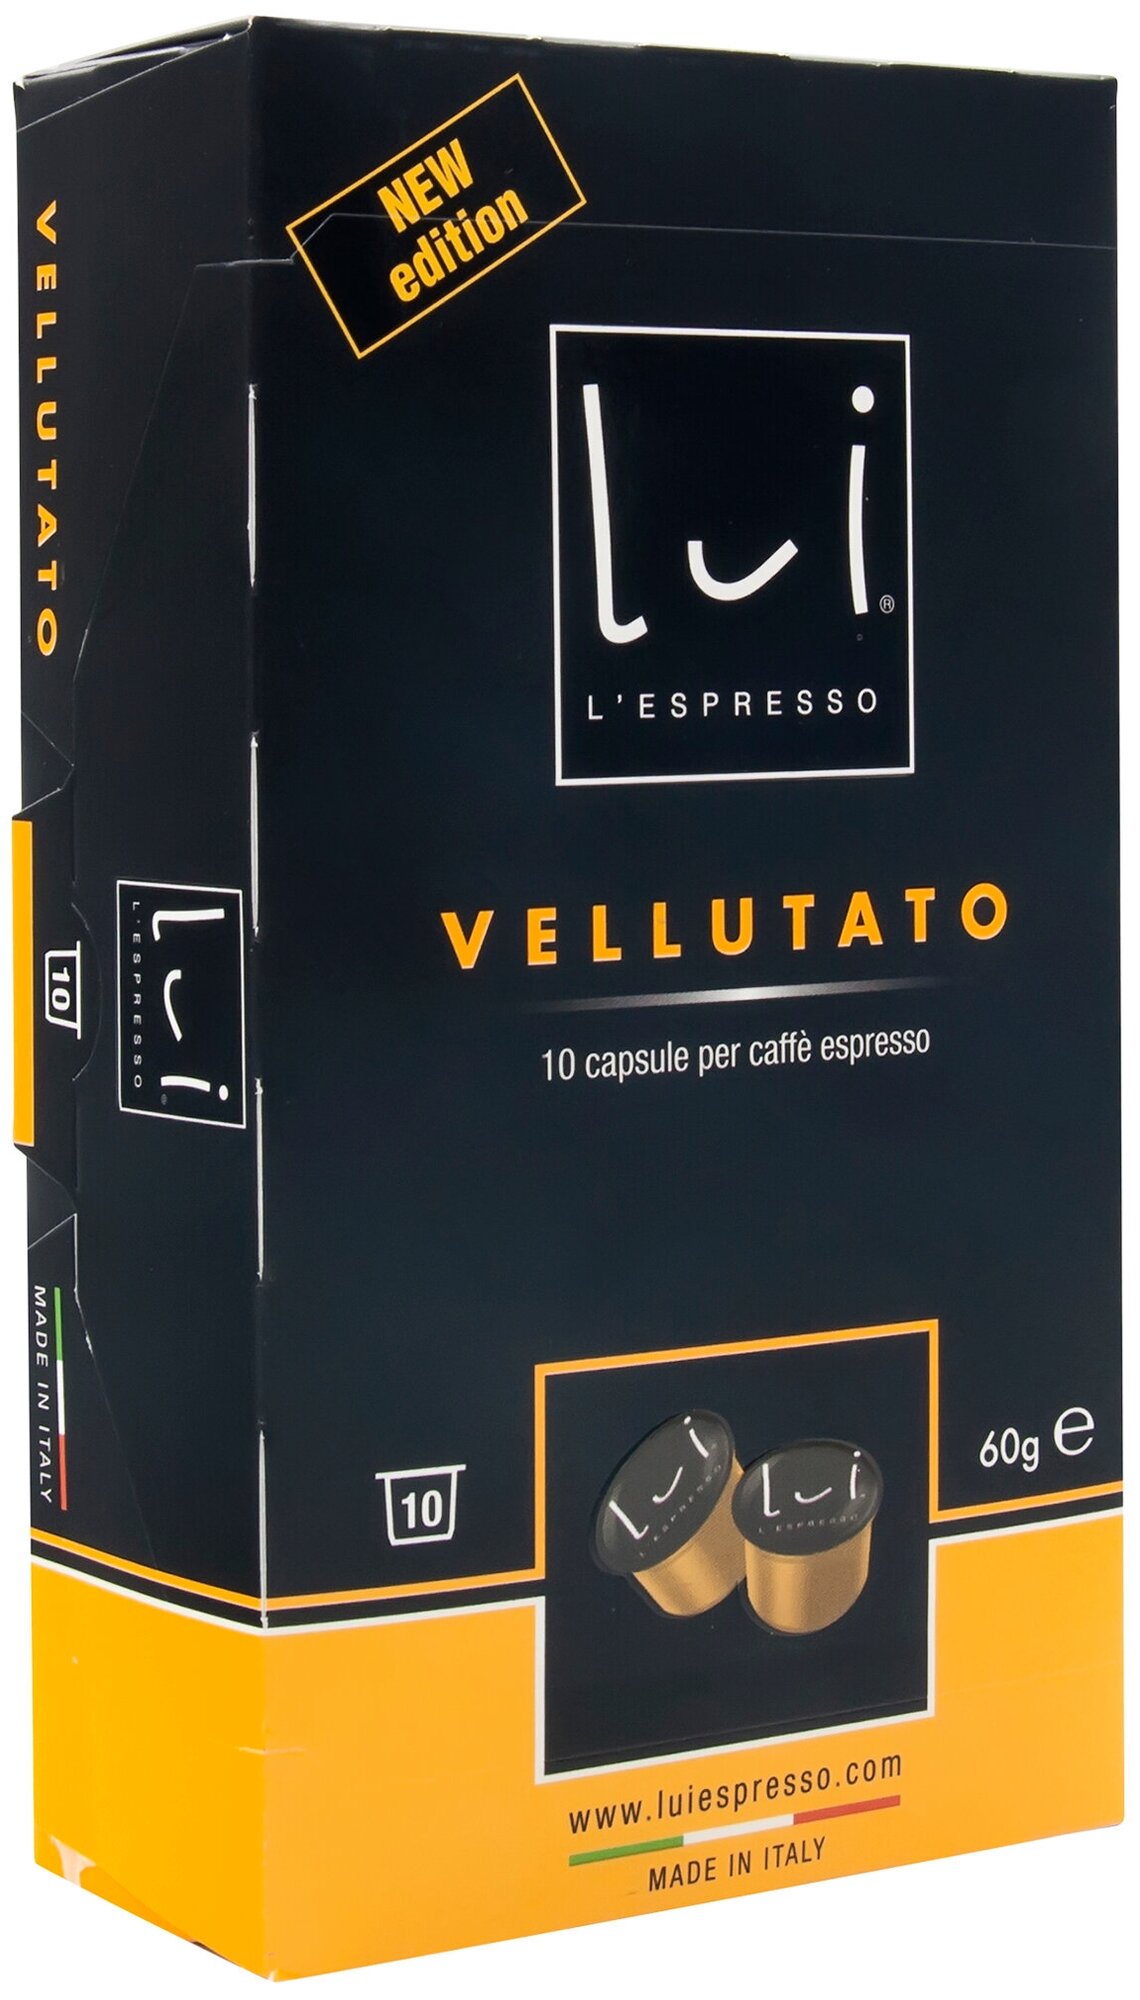 Кофе в капсулах Lui L'espresso Vellutato, для кофемашин Lui L'espresso, 10 капсул